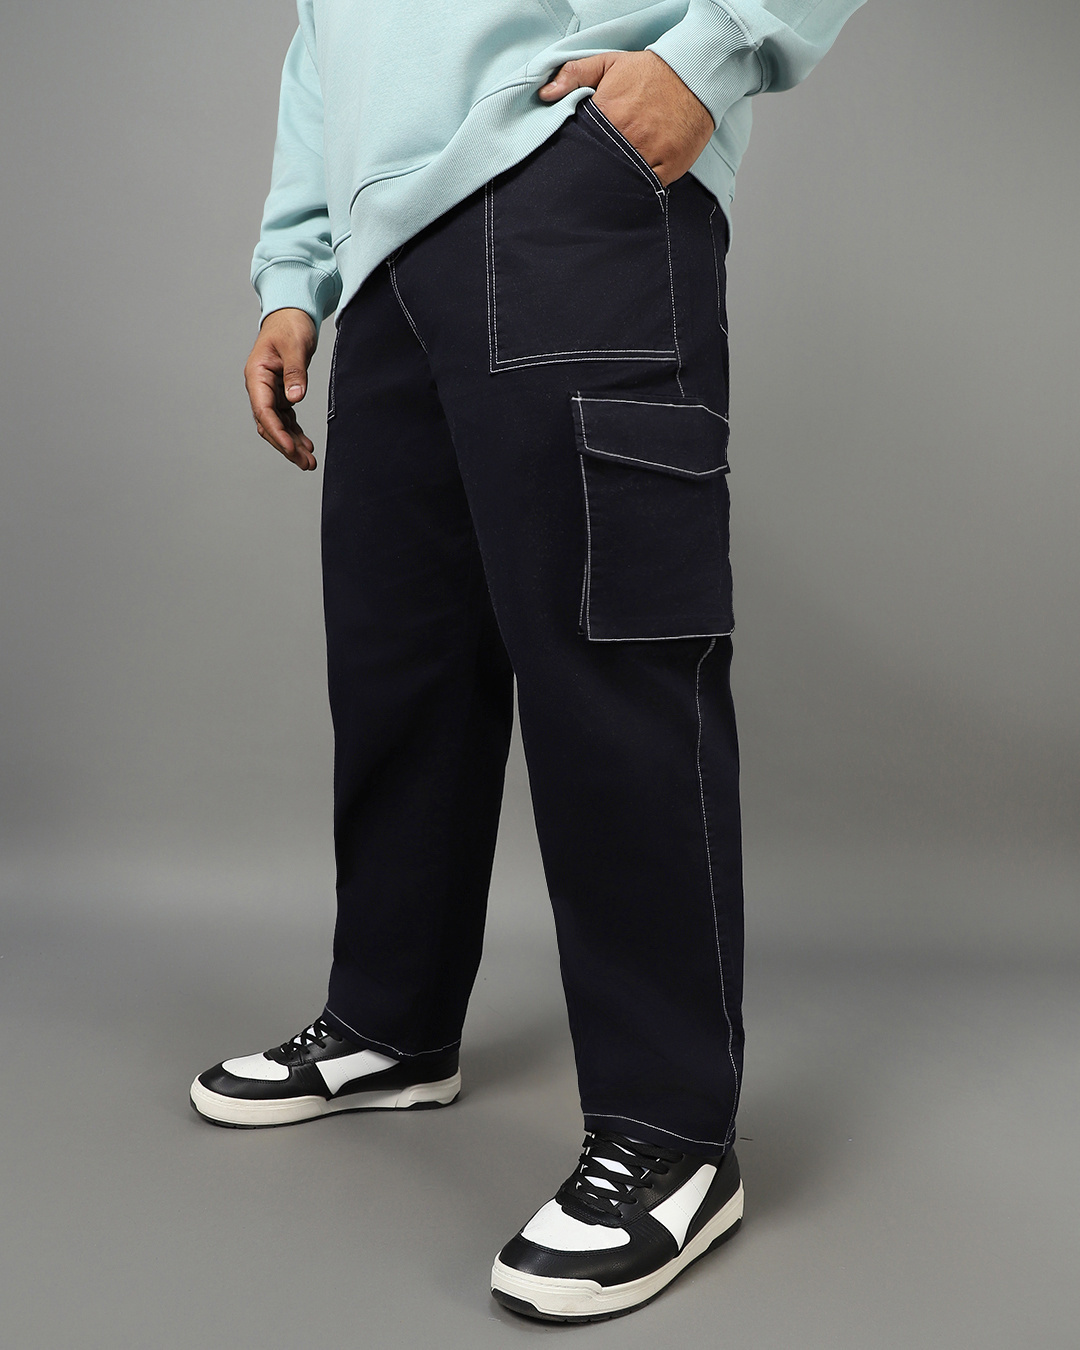 Buy Men's Blue Oversized Plus Size Cargo Pants Online at Bewakoof